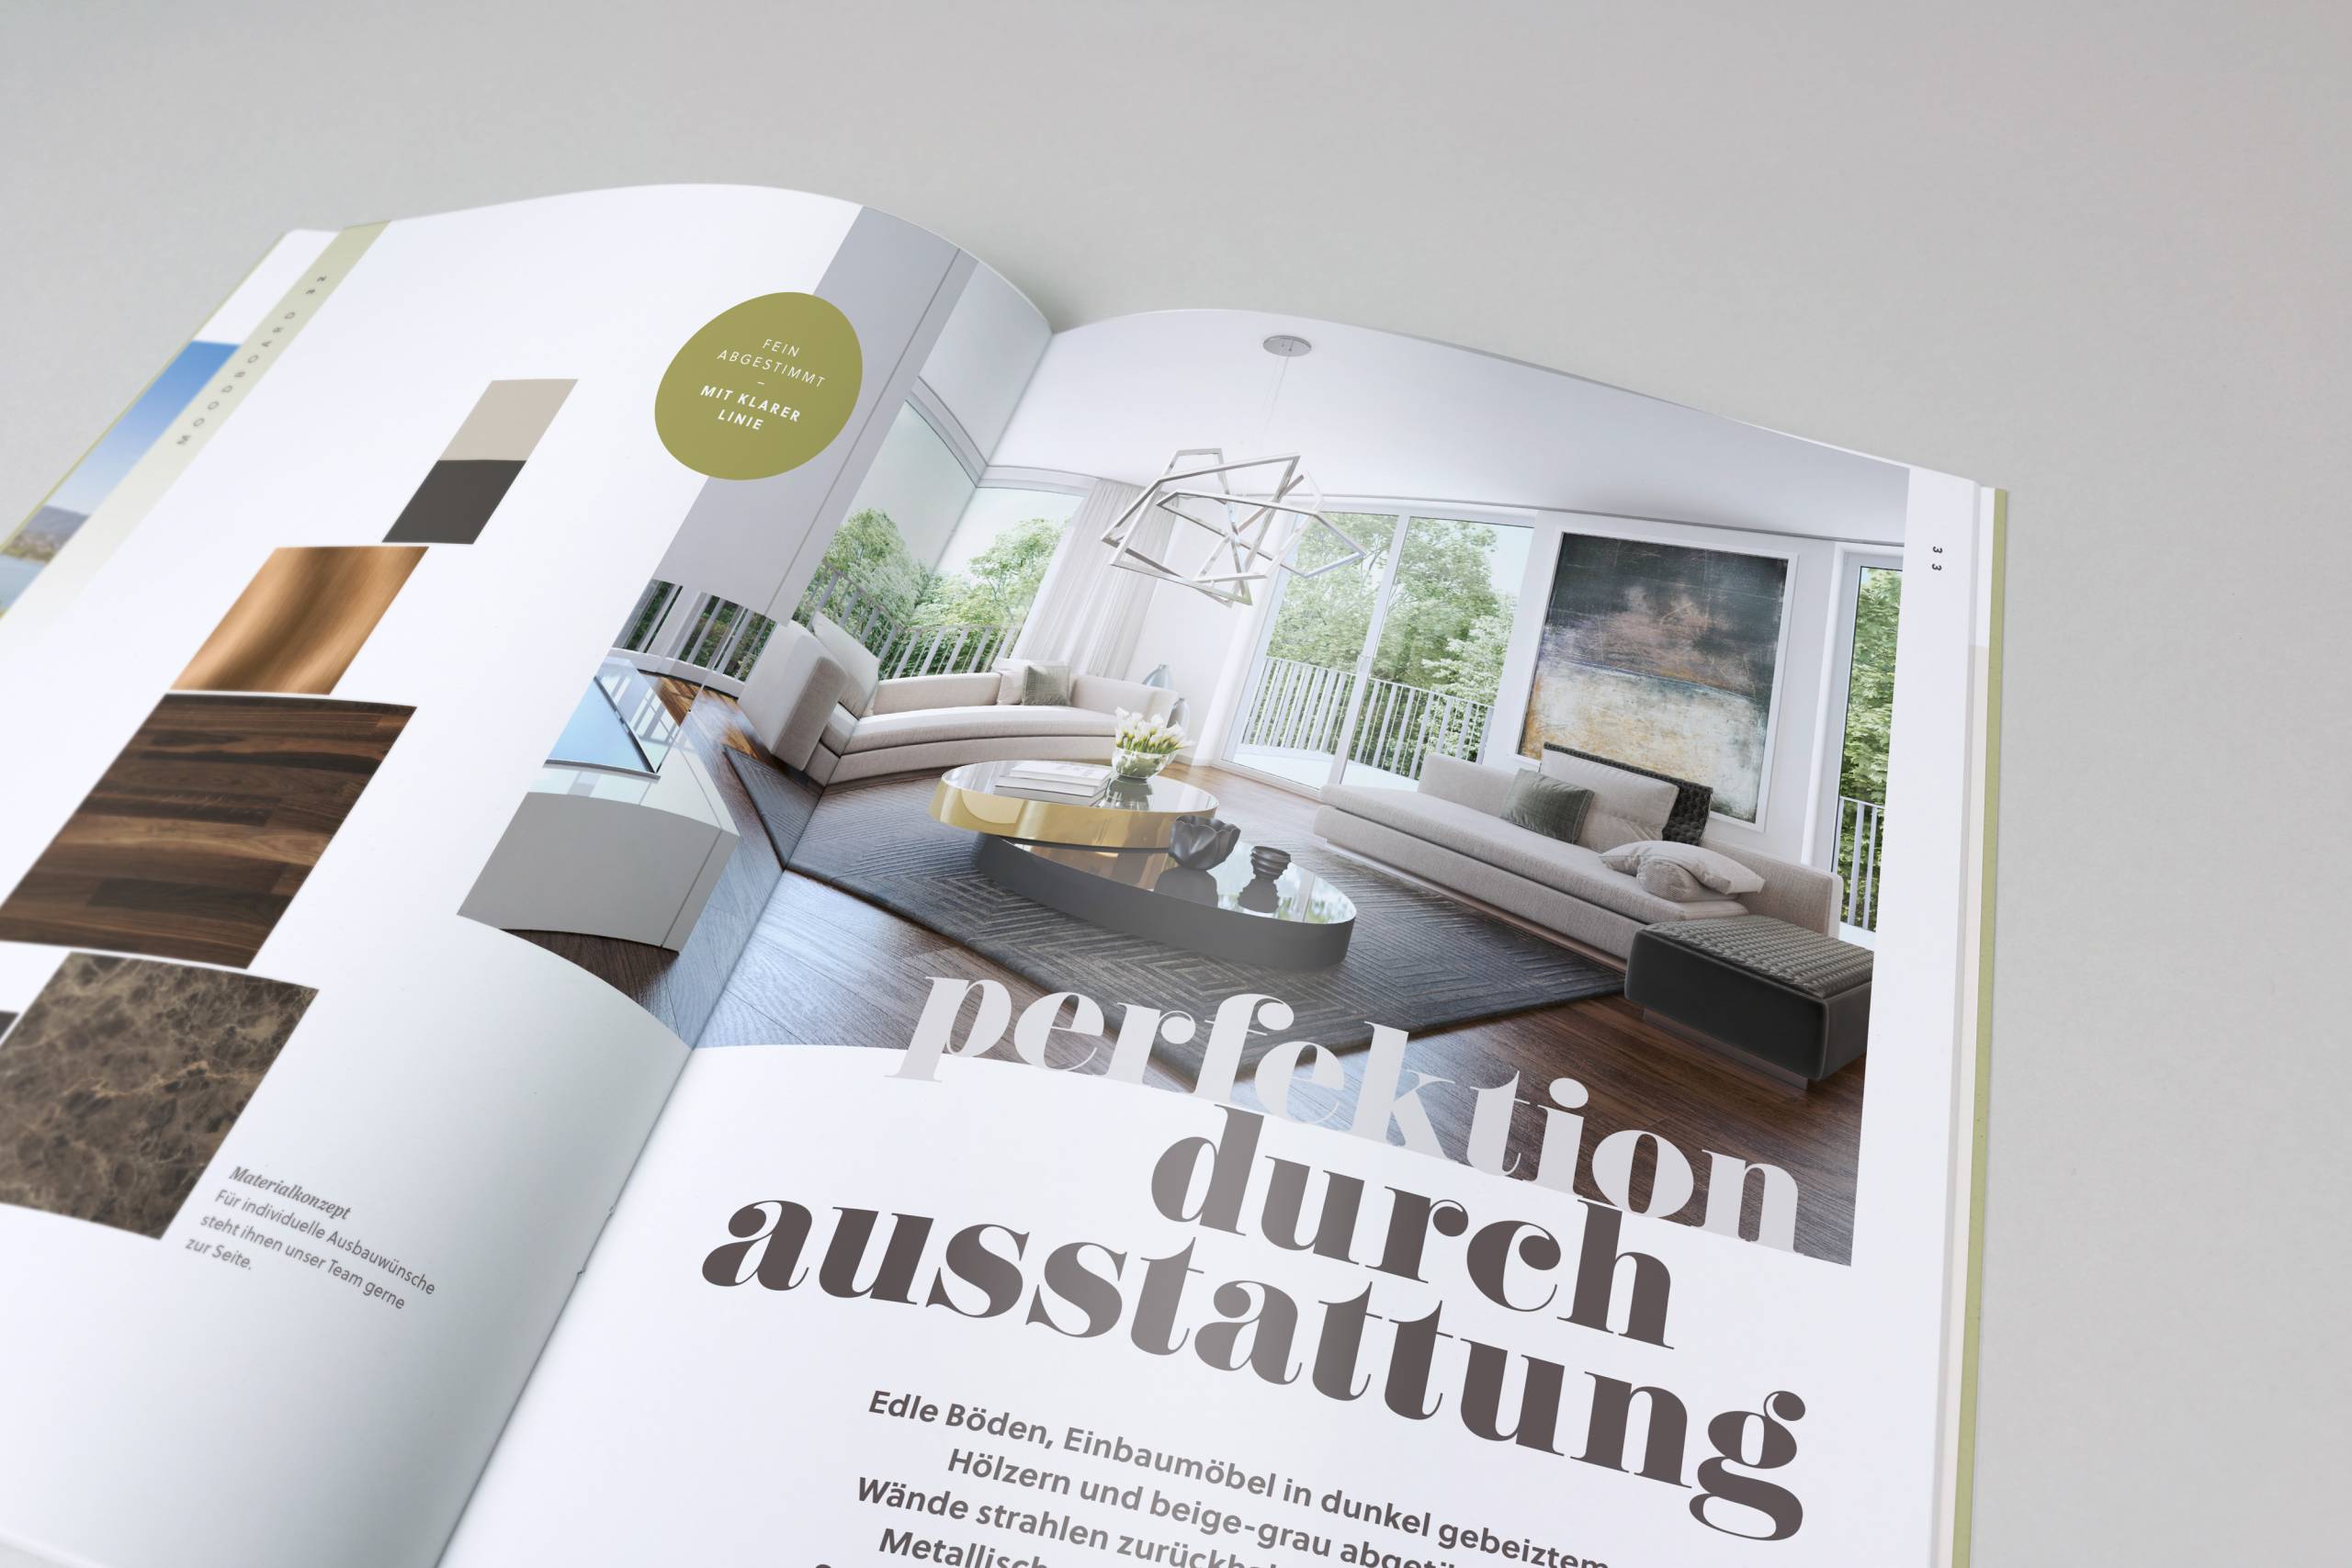 Immobilien vermarktung broschüre design